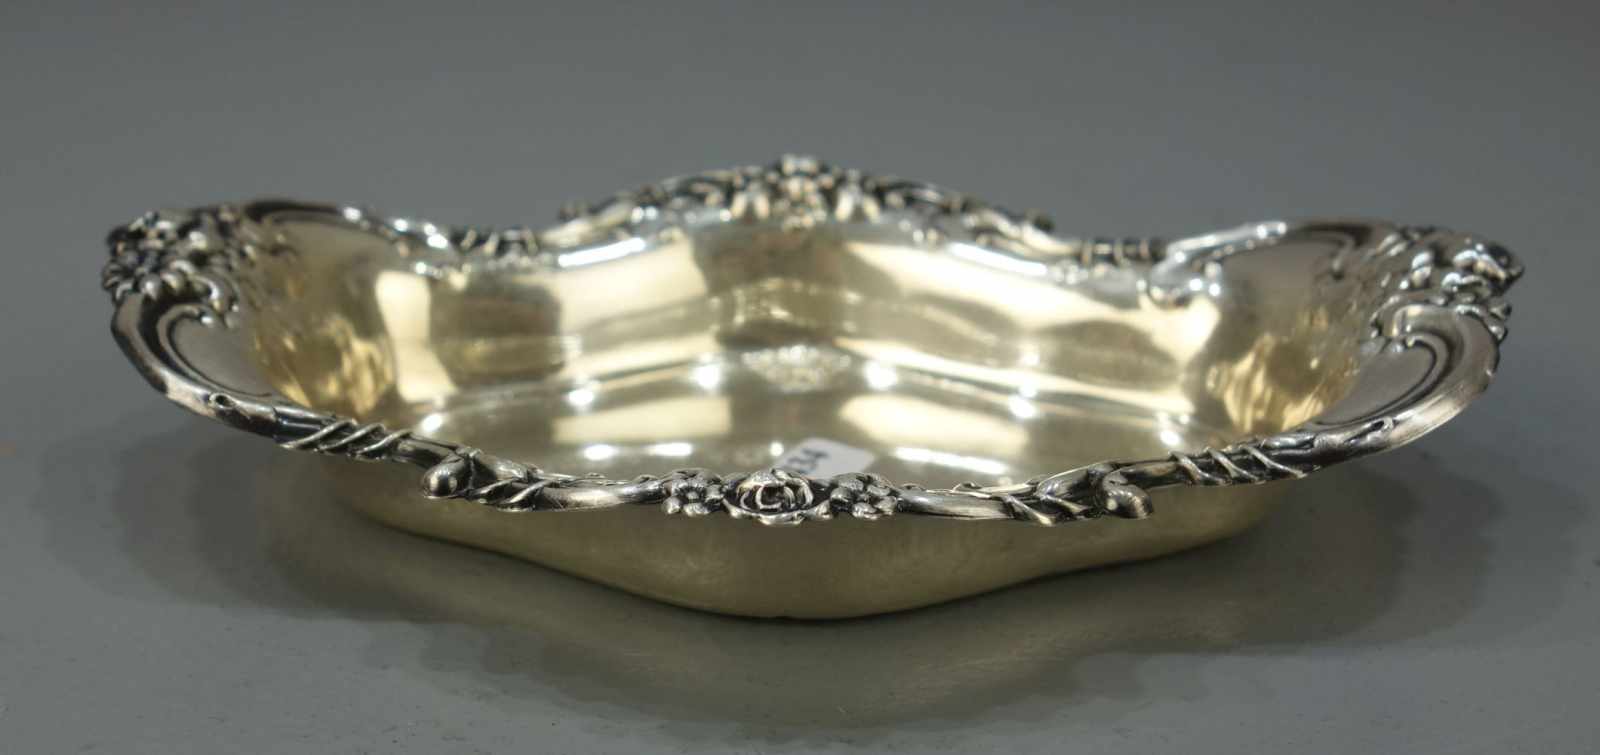 SILBERNE SCHALE / silver bowl, 925er Silber (74 g), bezeichnet "Wallace", "Sterling" und mit